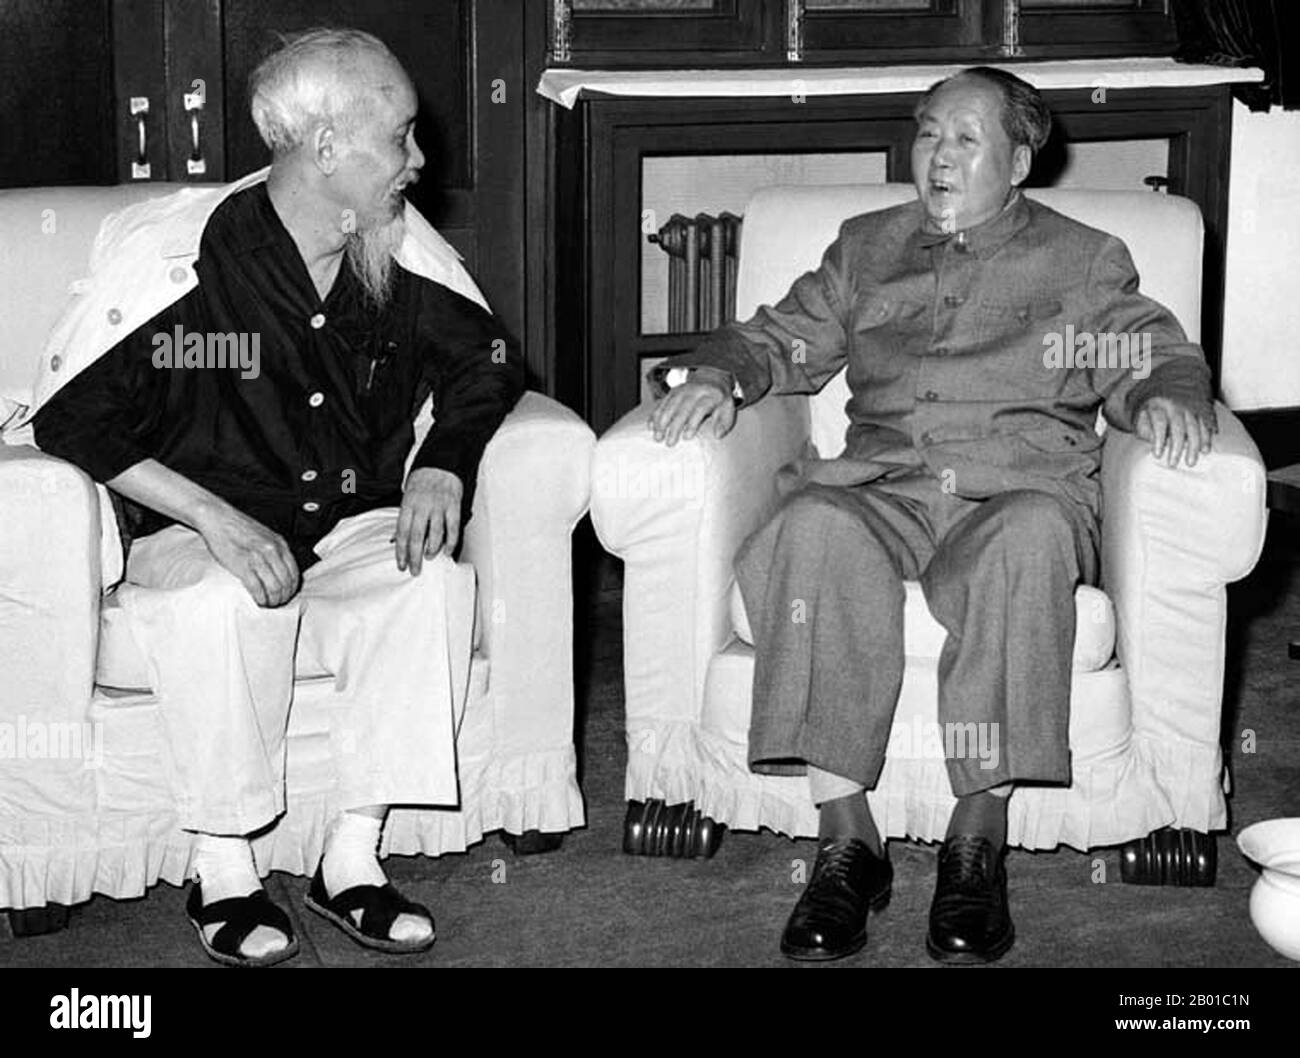 China/Vietnam: Mao Zedong (26. Dezember 1893 - 9. September 1976) im Gespräch mit Ho Chi Minh (19. Mai 1890 - 2. September 1969), China, Mai 1965. Mao Zedong, 1. Vorsitzender der Kommunistischen Partei Chinas (r. 1943-1976) in einem freundlichen Gespräch mit Ho Chi Minh, Vorsitzender der Arbeiterpartei Vietnams (r. 1951-1969). Stockfoto